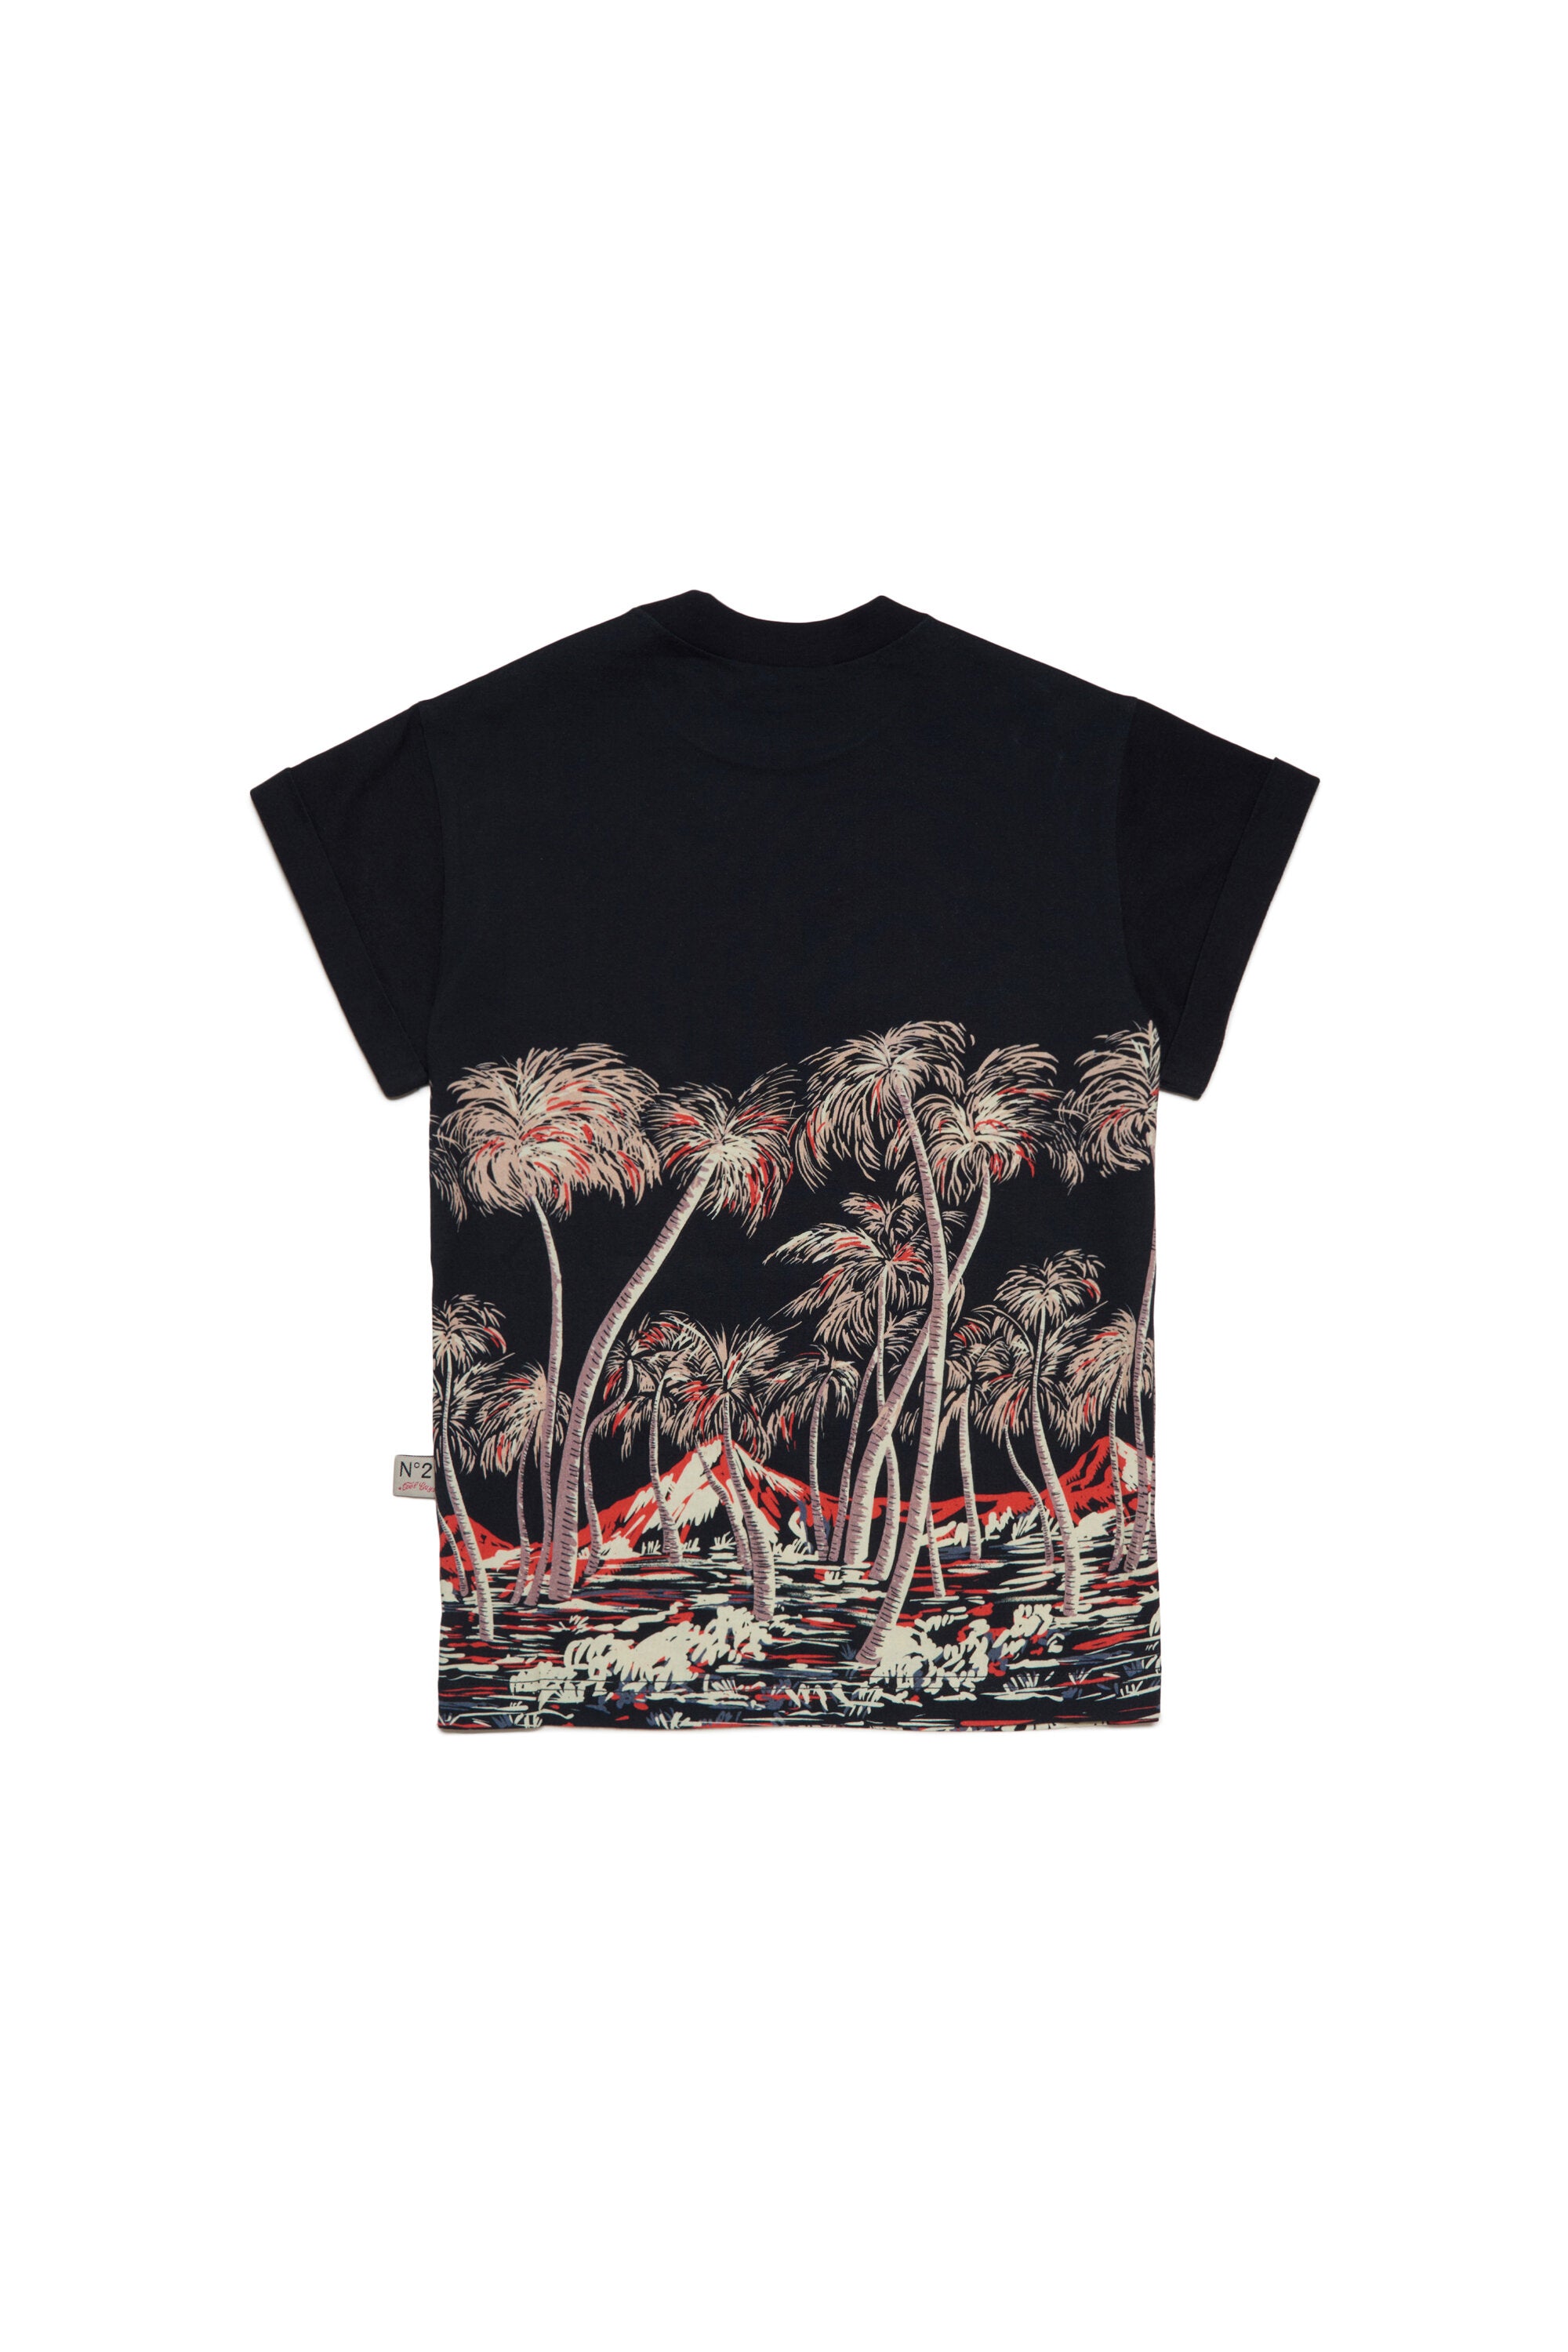 Camiseta allover de palmeras